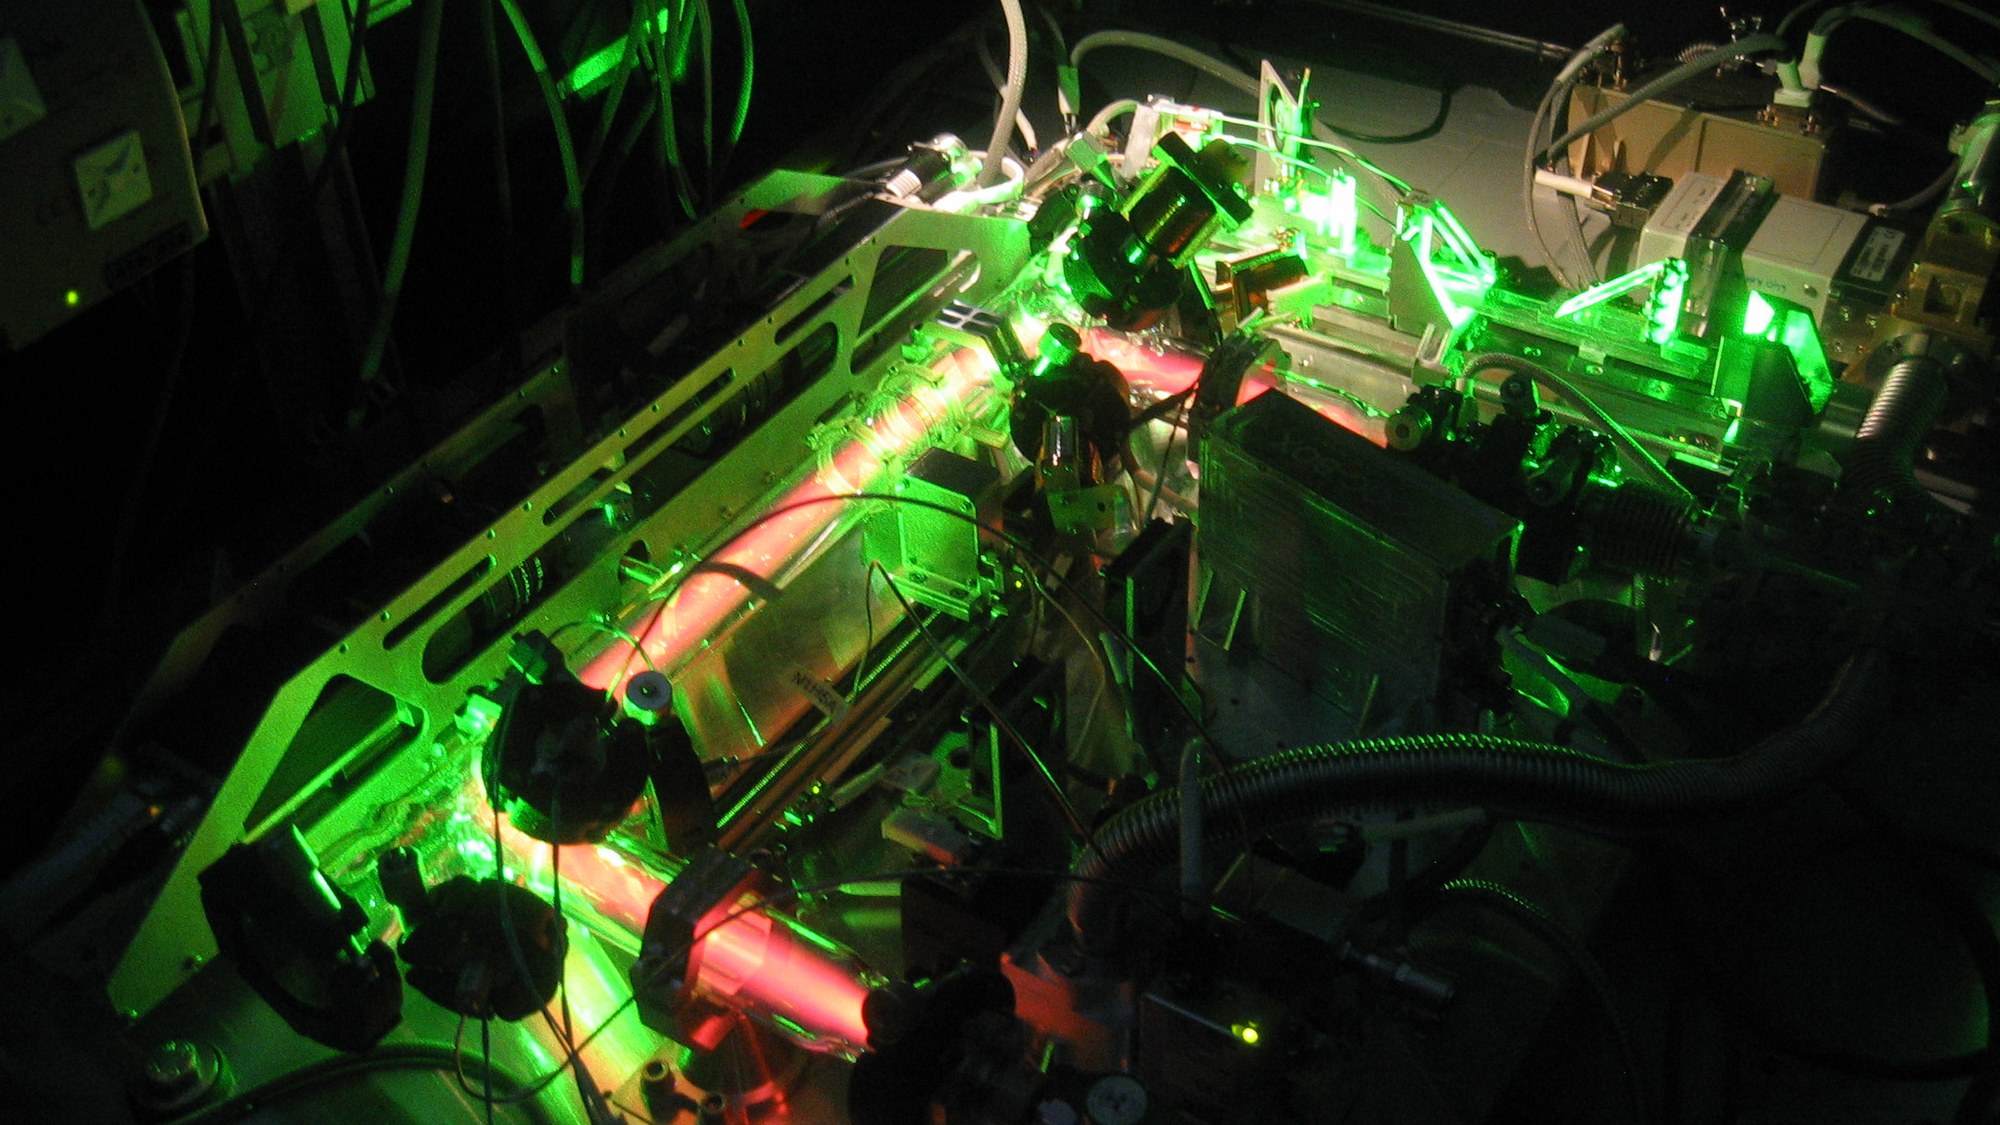 PK-4 – a neon tube as an experimental reactor